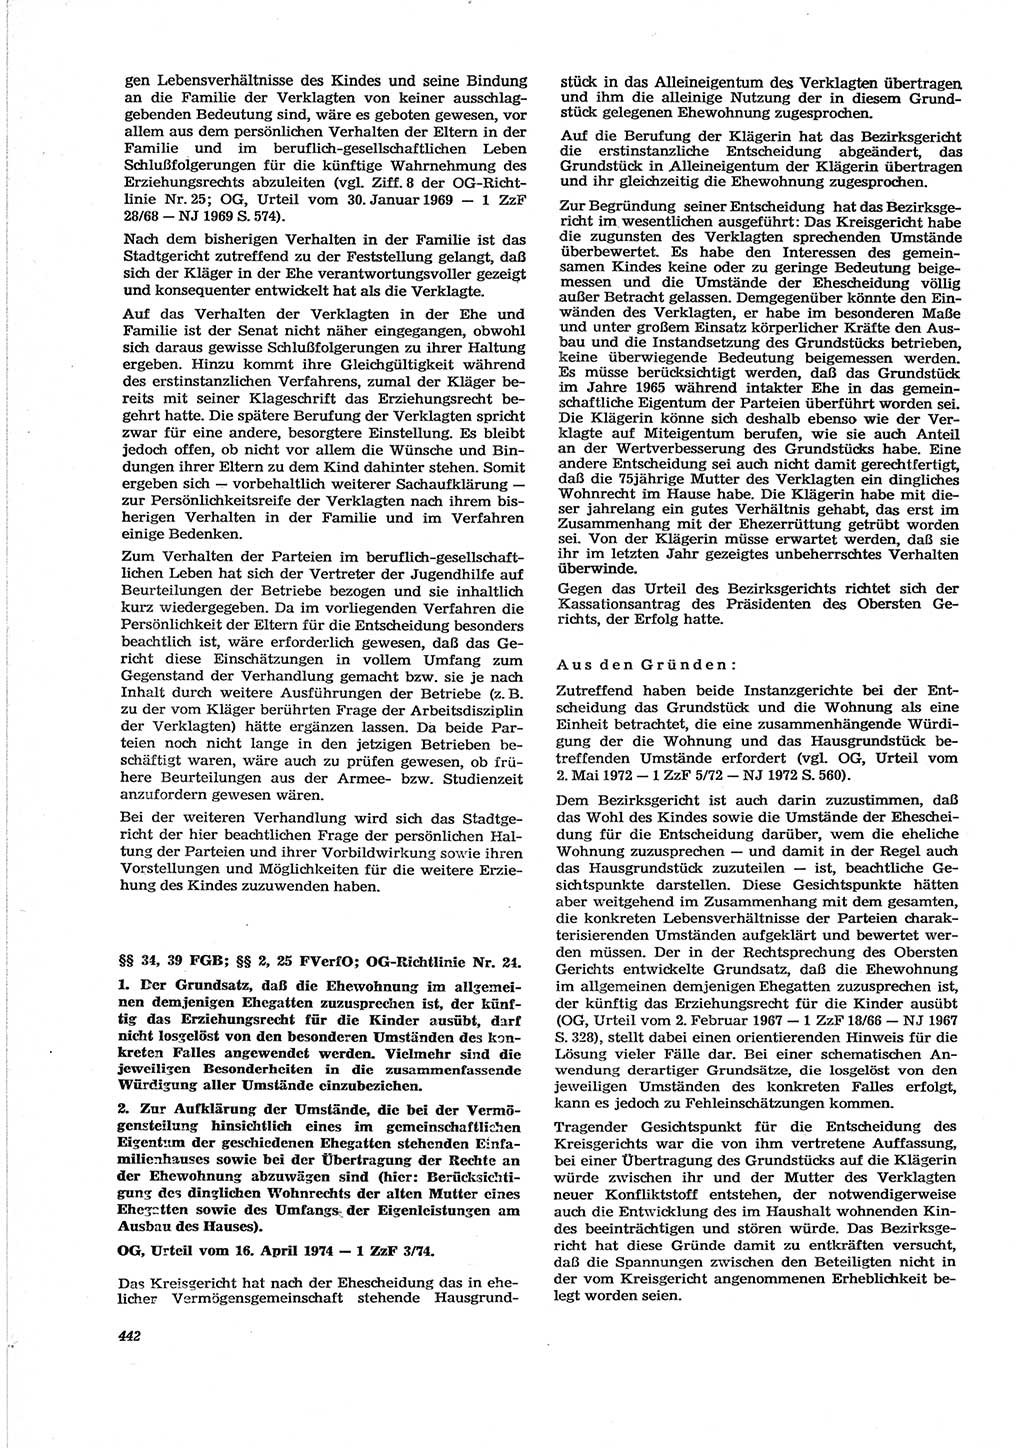 Neue Justiz (NJ), Zeitschrift für Recht und Rechtswissenschaft [Deutsche Demokratische Republik (DDR)], 28. Jahrgang 1974, Seite 442 (NJ DDR 1974, S. 442)